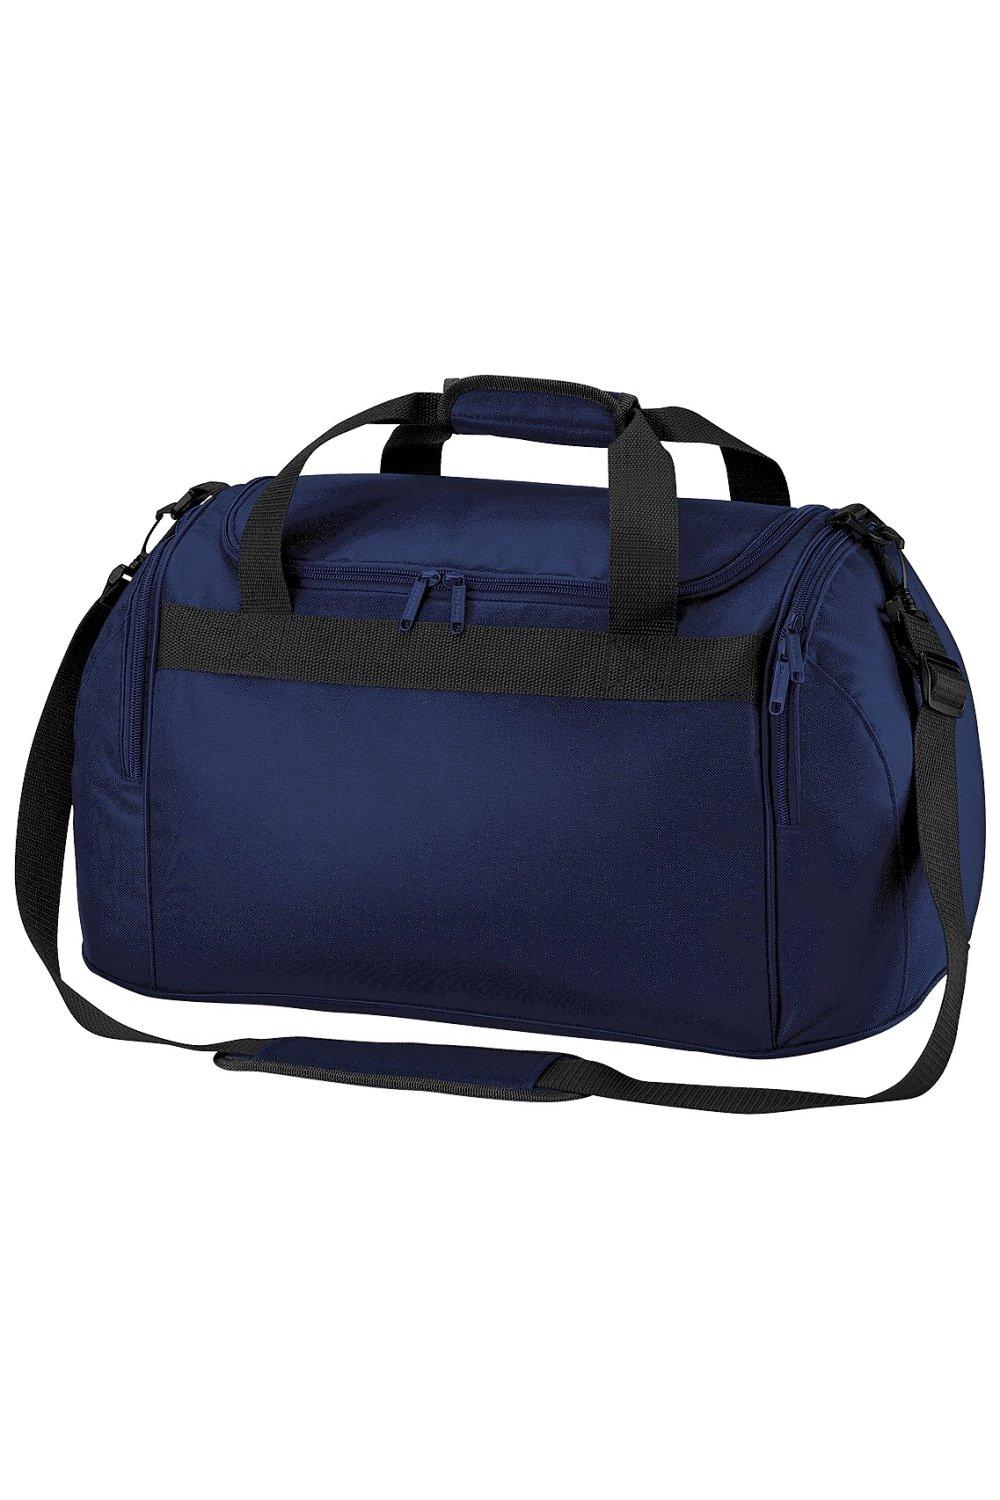 Дорожная сумка для фристайла/спортивная сумка (26 литров) Bagbase, темно-синий пакет котики большой 38 5 x 28 x 15 см